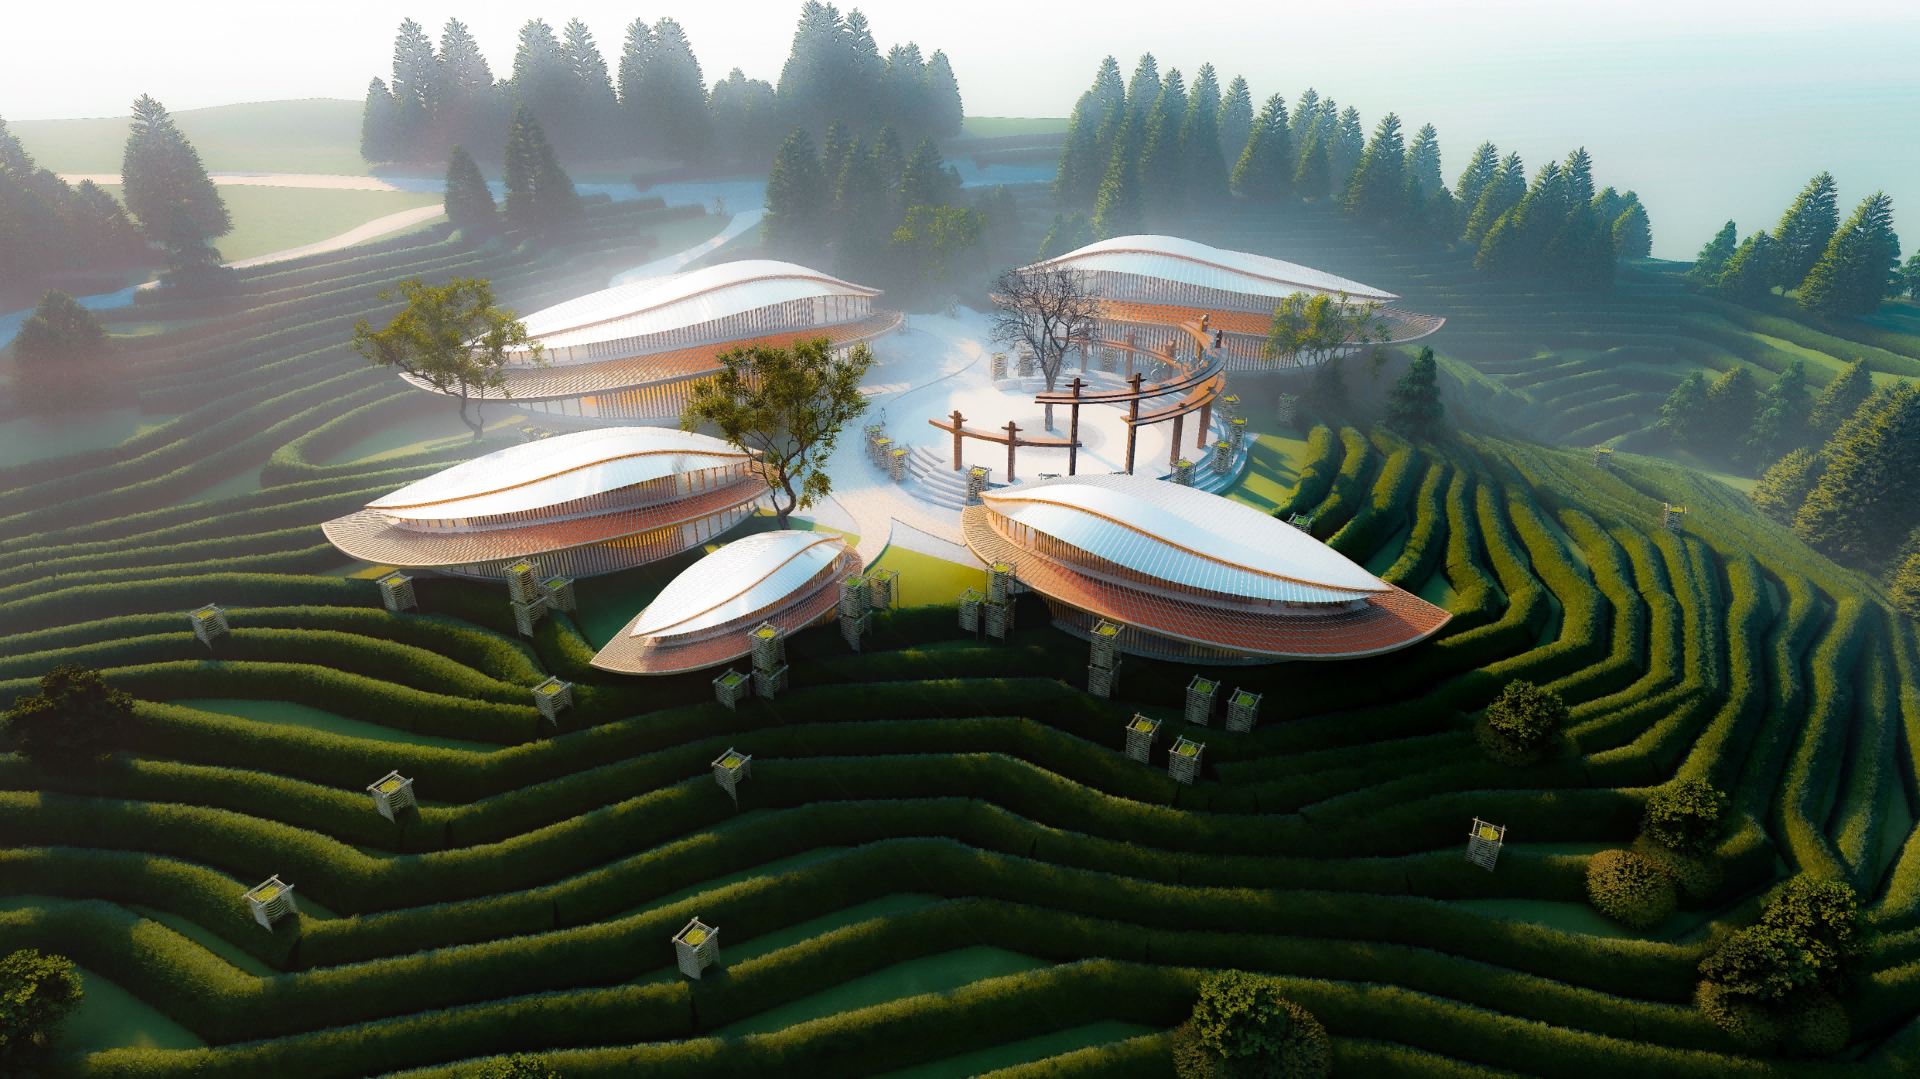 筠连县红茶产业园建设项目、筠连县春风村特色产业融合发展建设项目